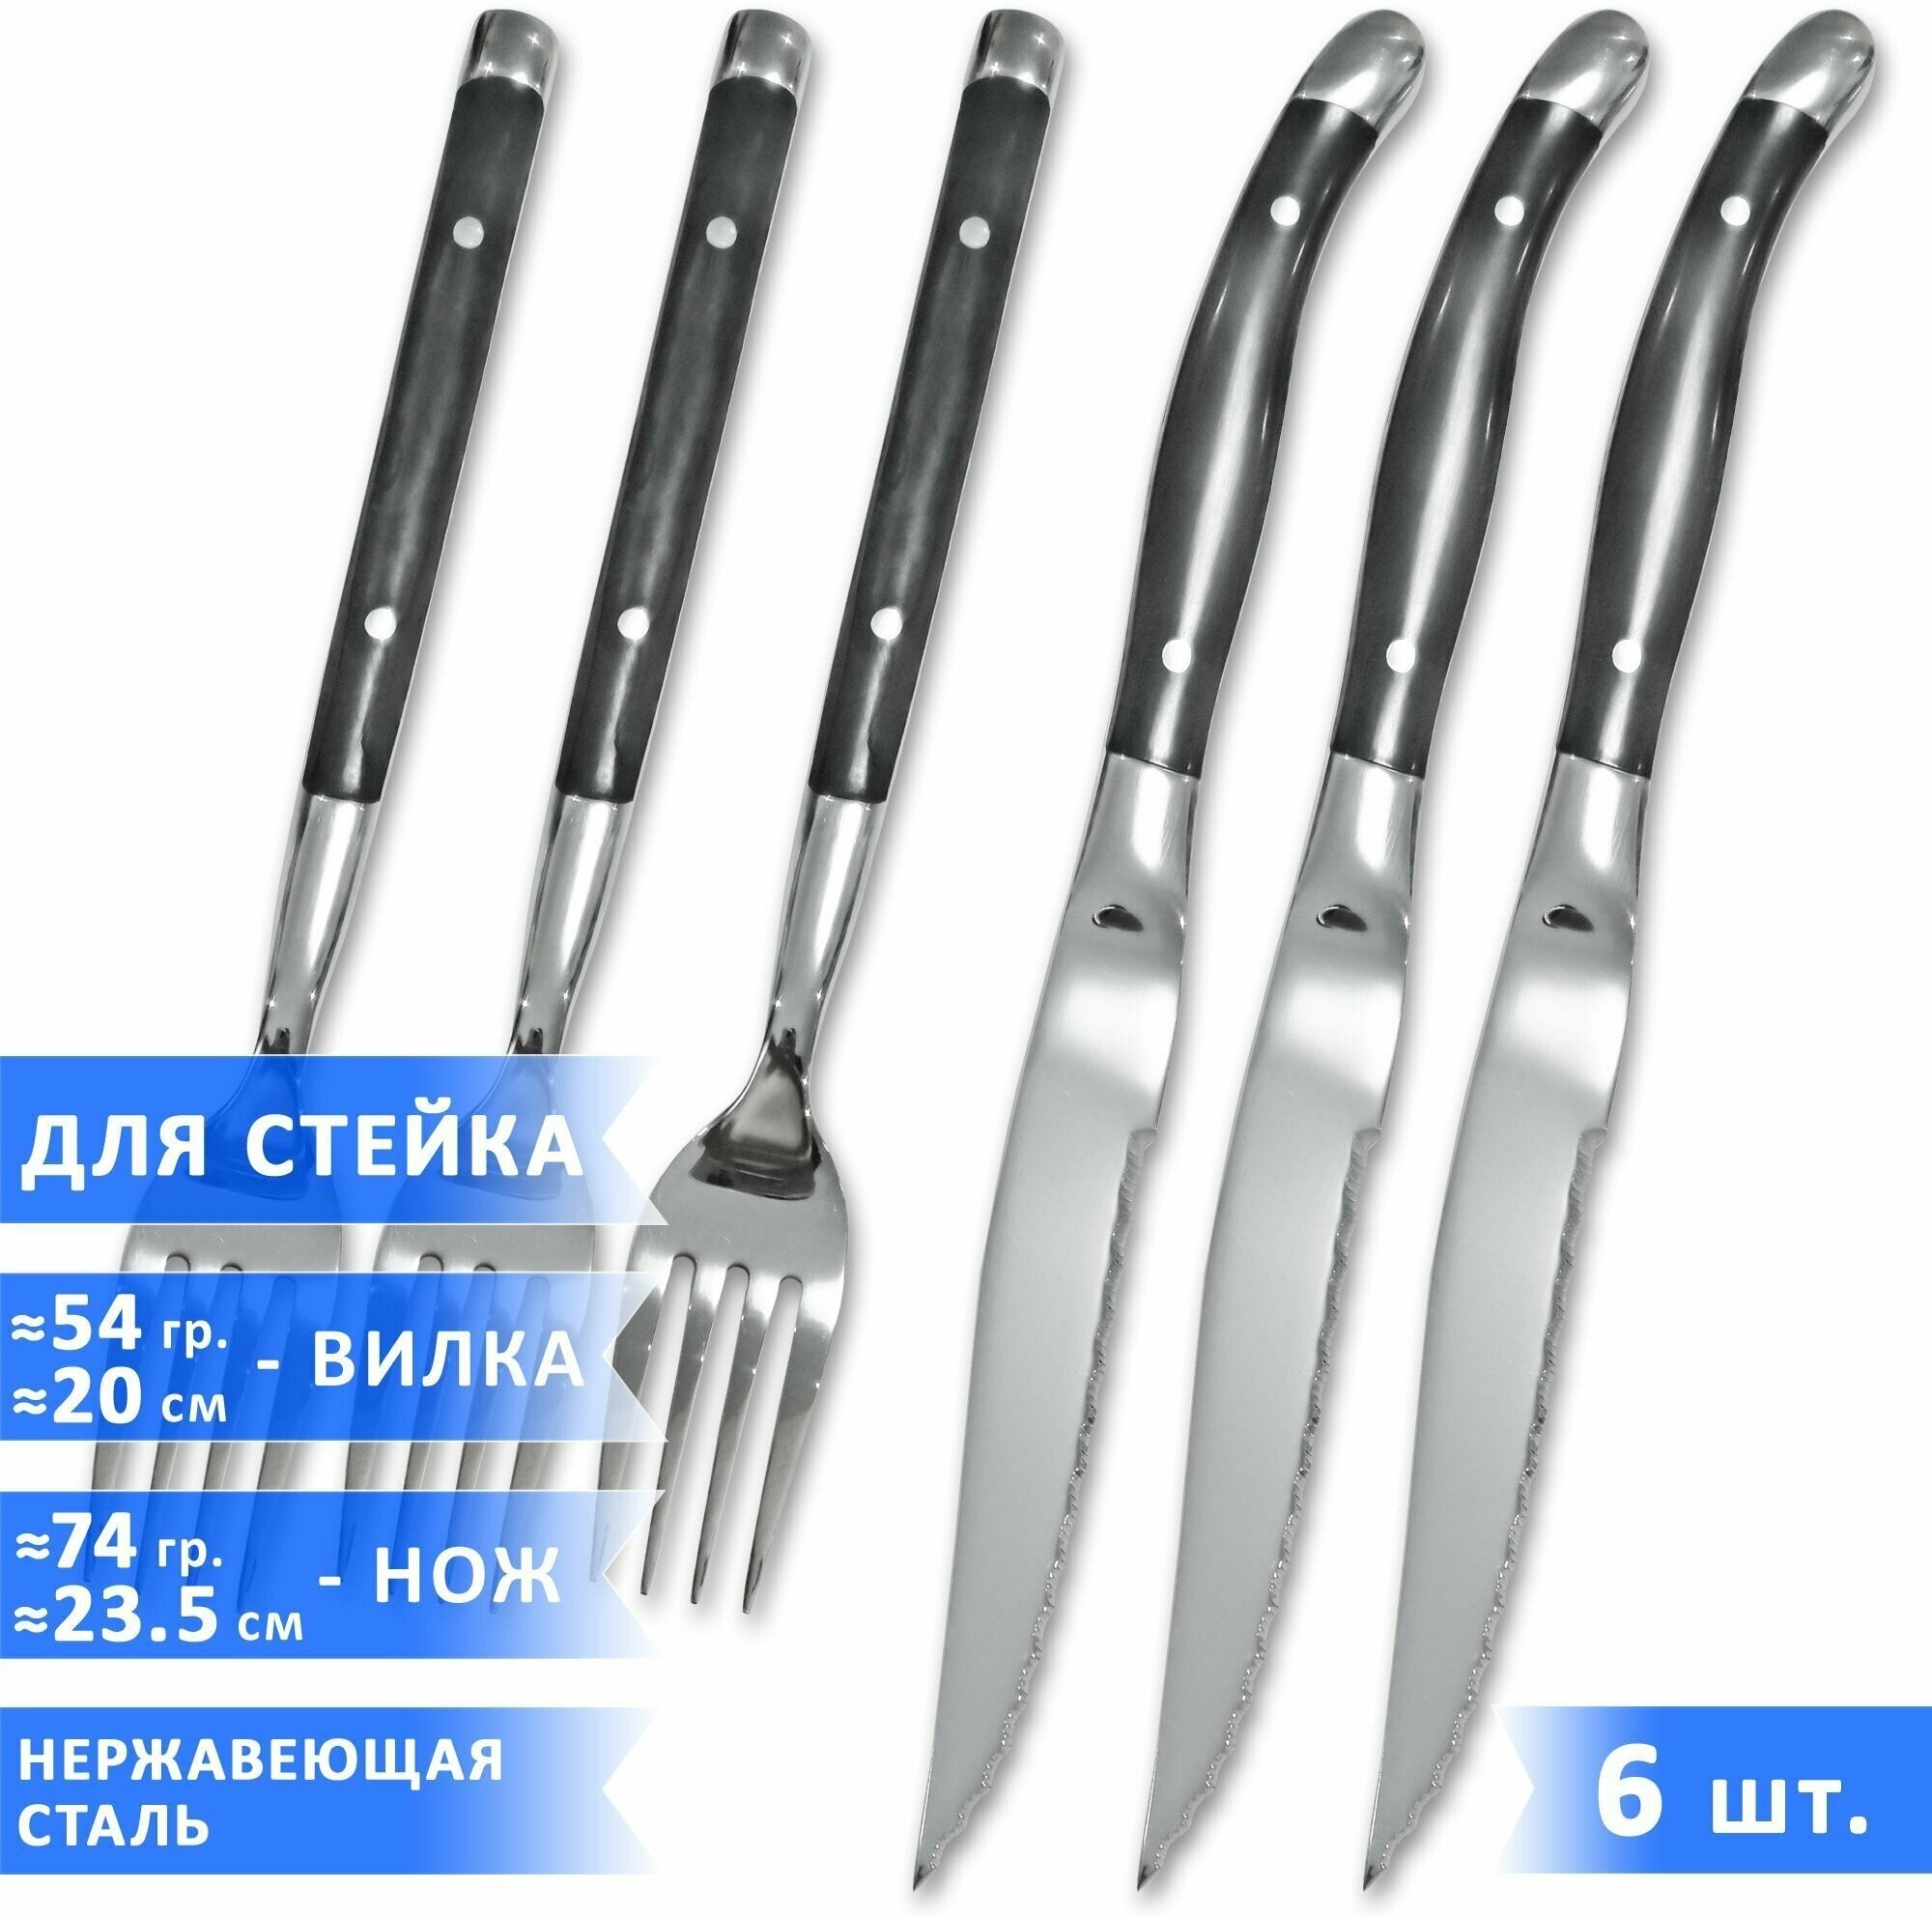 Набор столовых приборов для стейка VELERCART (3 ножа для стейка 23,5 см и 3 вилки 20 см), черные, нержавеющая сталь, 6 предметов